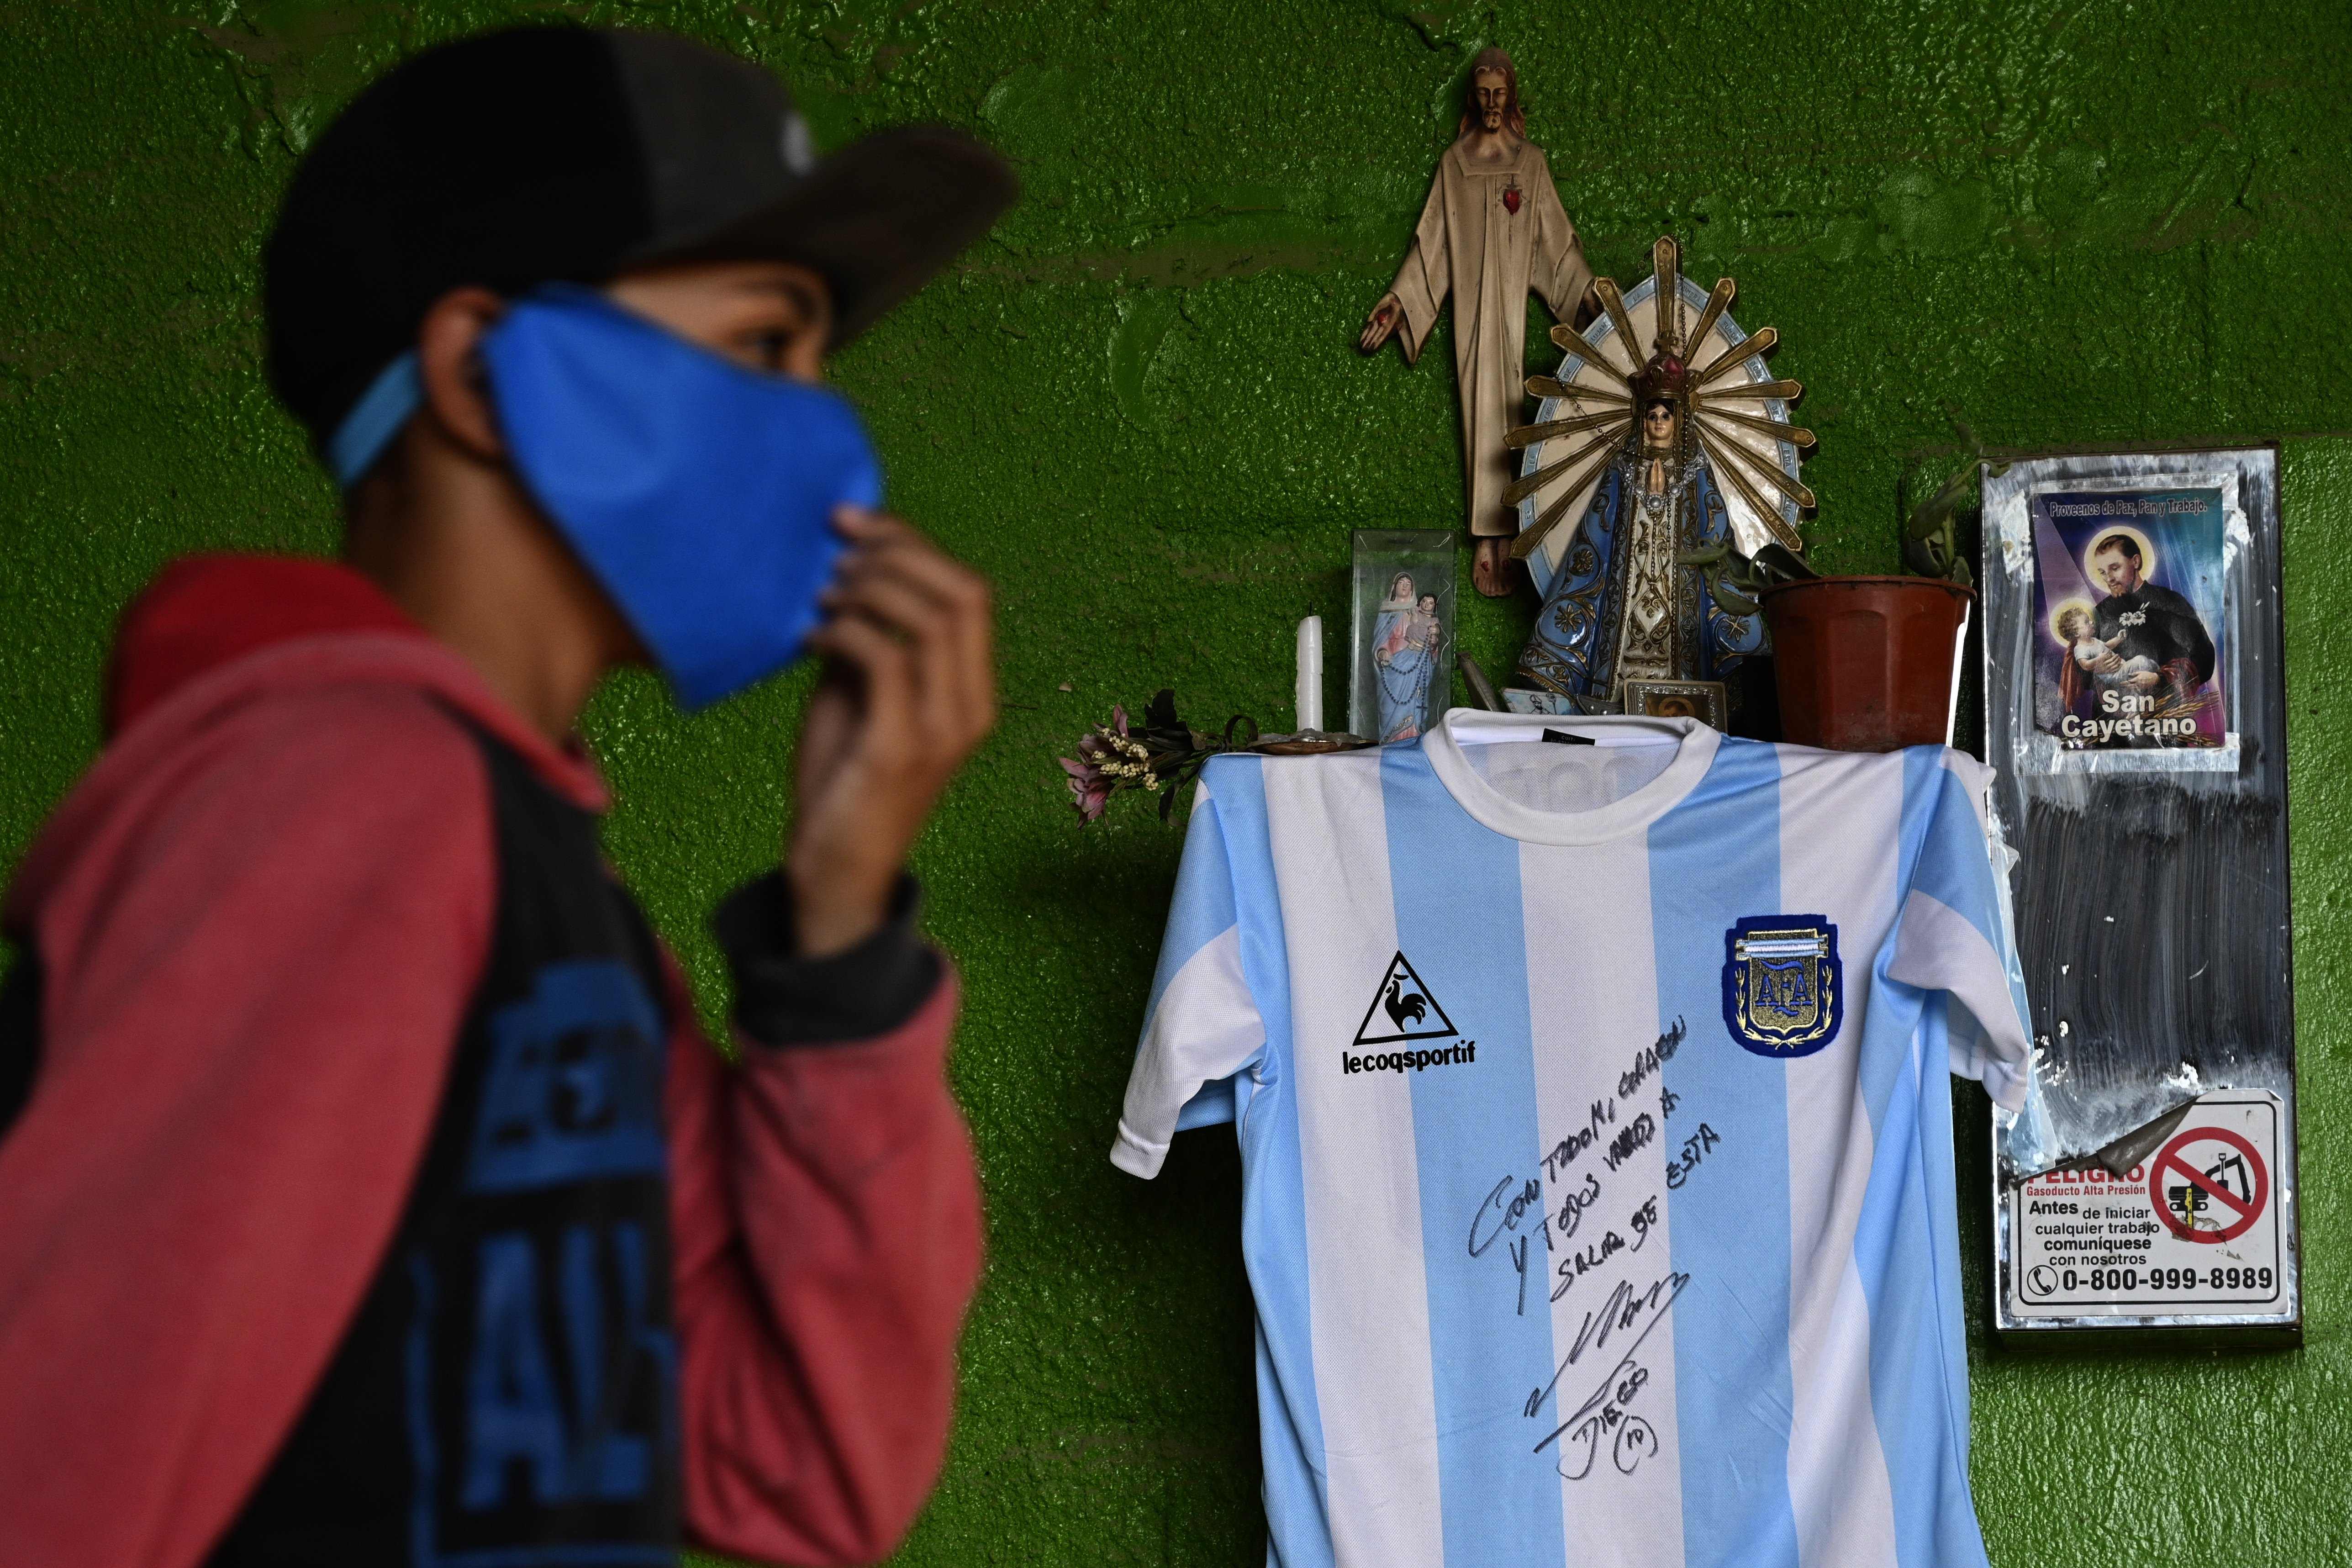 Lo recaudado en el sorteo de la playera de Maradona se repartirá en merenderos y ollas populares del barrio de viviendas sociales René Favaloro y en los asentamientos precarios que lo rodean. (Foto Prensa Libre AFP).